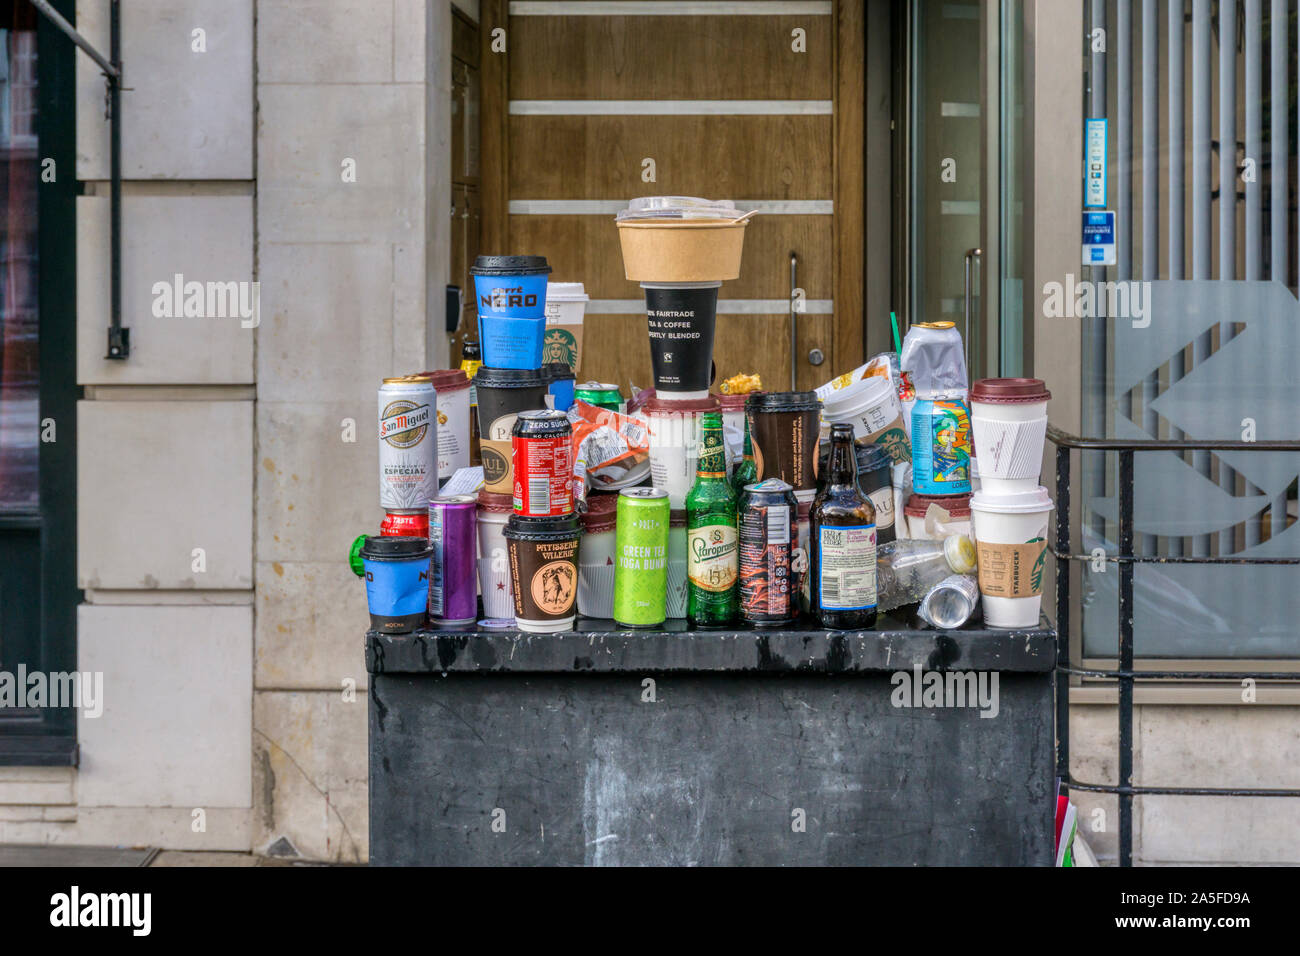 Müll auf der Straße Möbel nach Protest Demonstration in London ausgeglichen. Takeaway Kaffeetassen, Bierdosen und Flaschen & Fast Food Container. Stockfoto